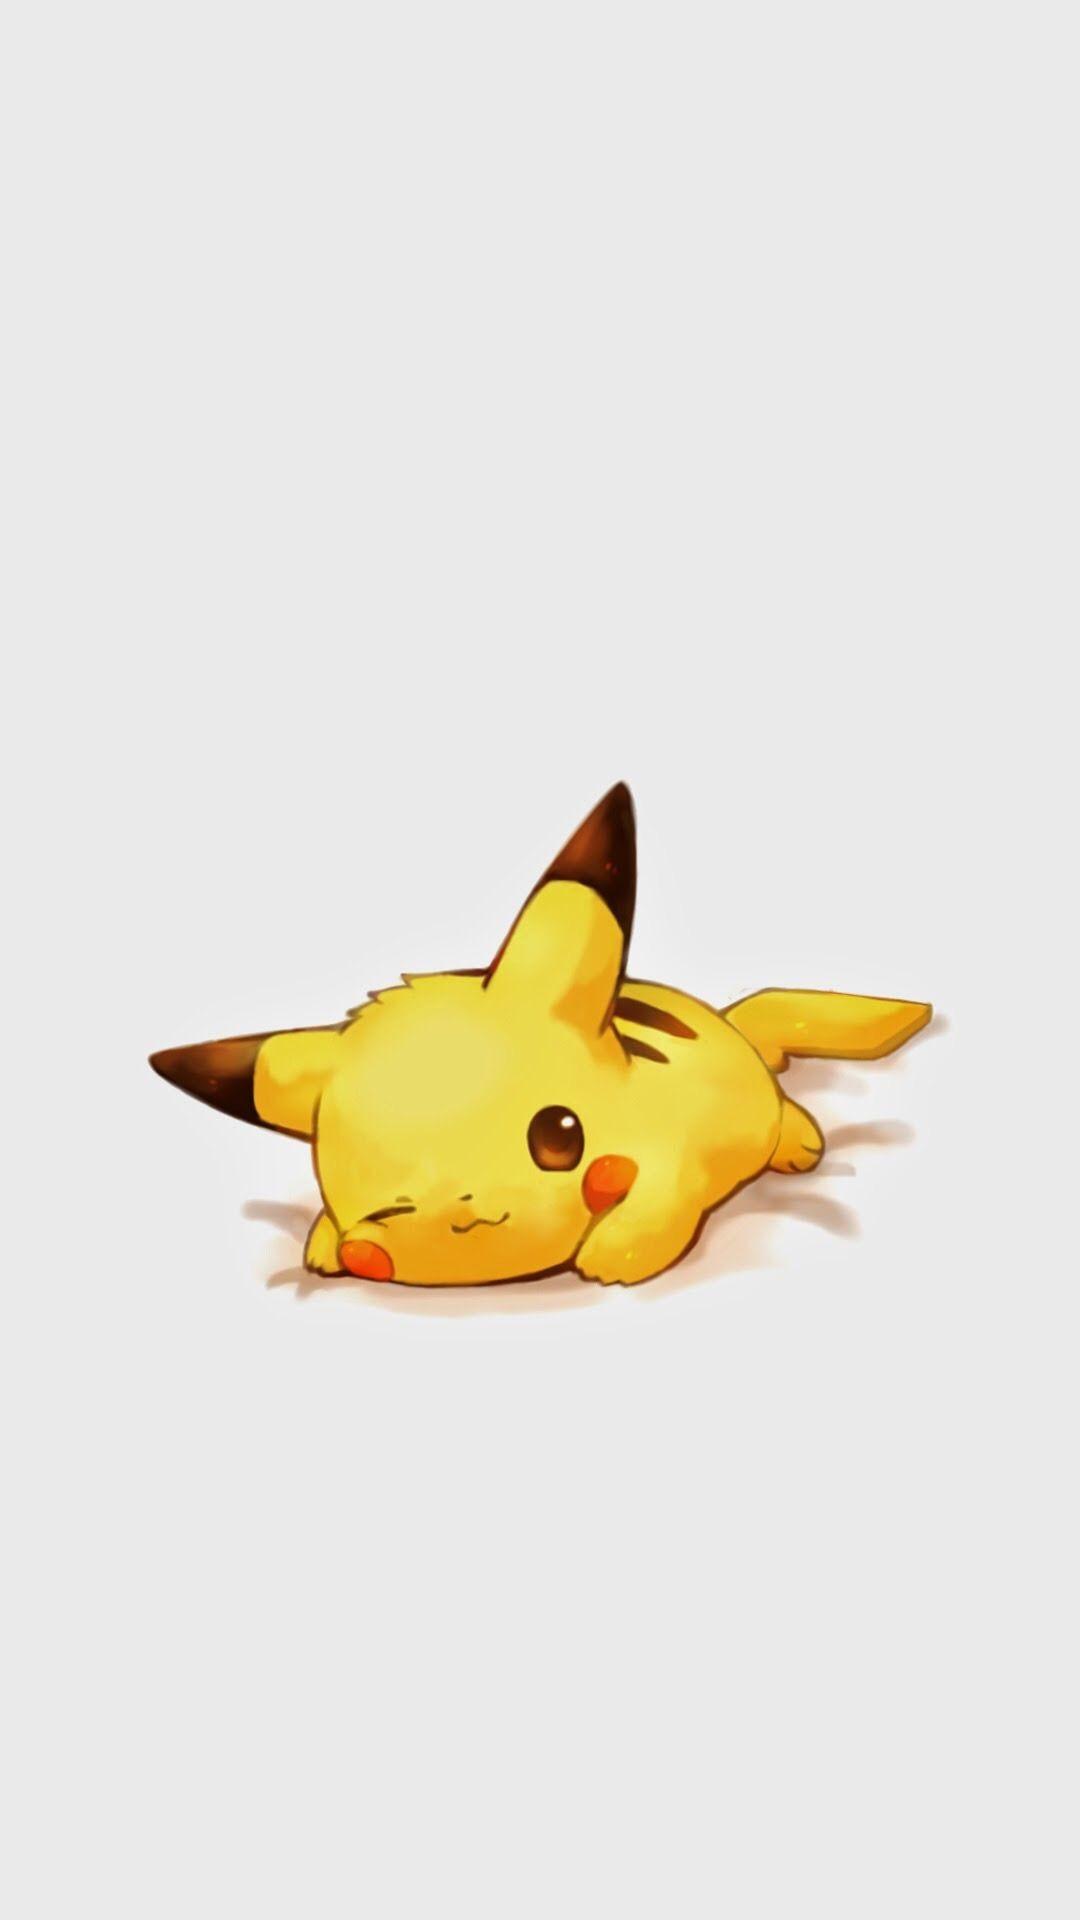 Cute Pikachu Wallpaper background picture